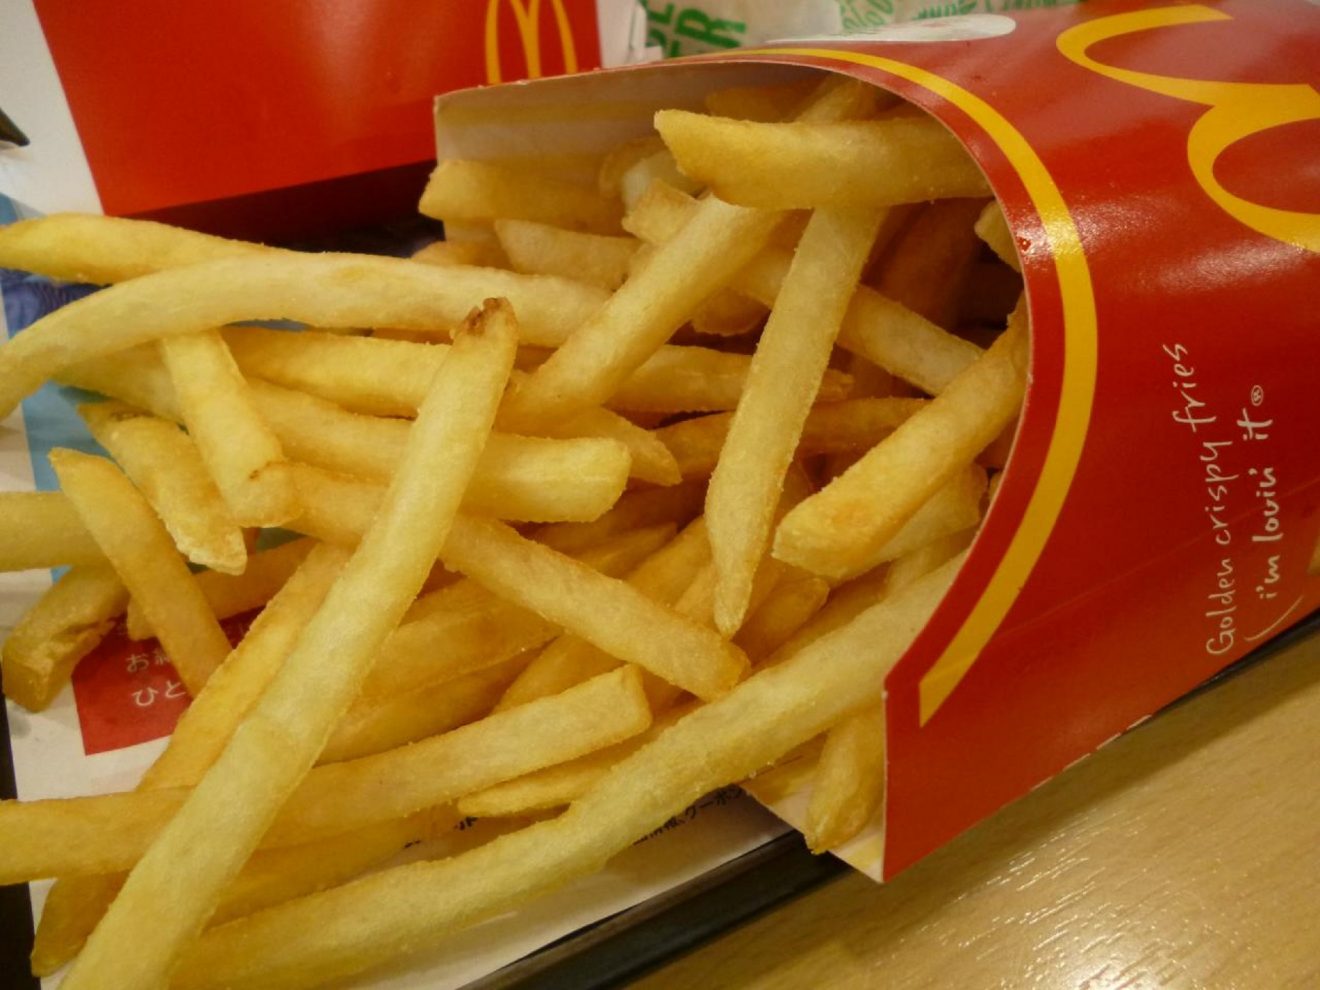 Les frites américaines de McDonald's contiennent 19 ingrédients - Agro Media